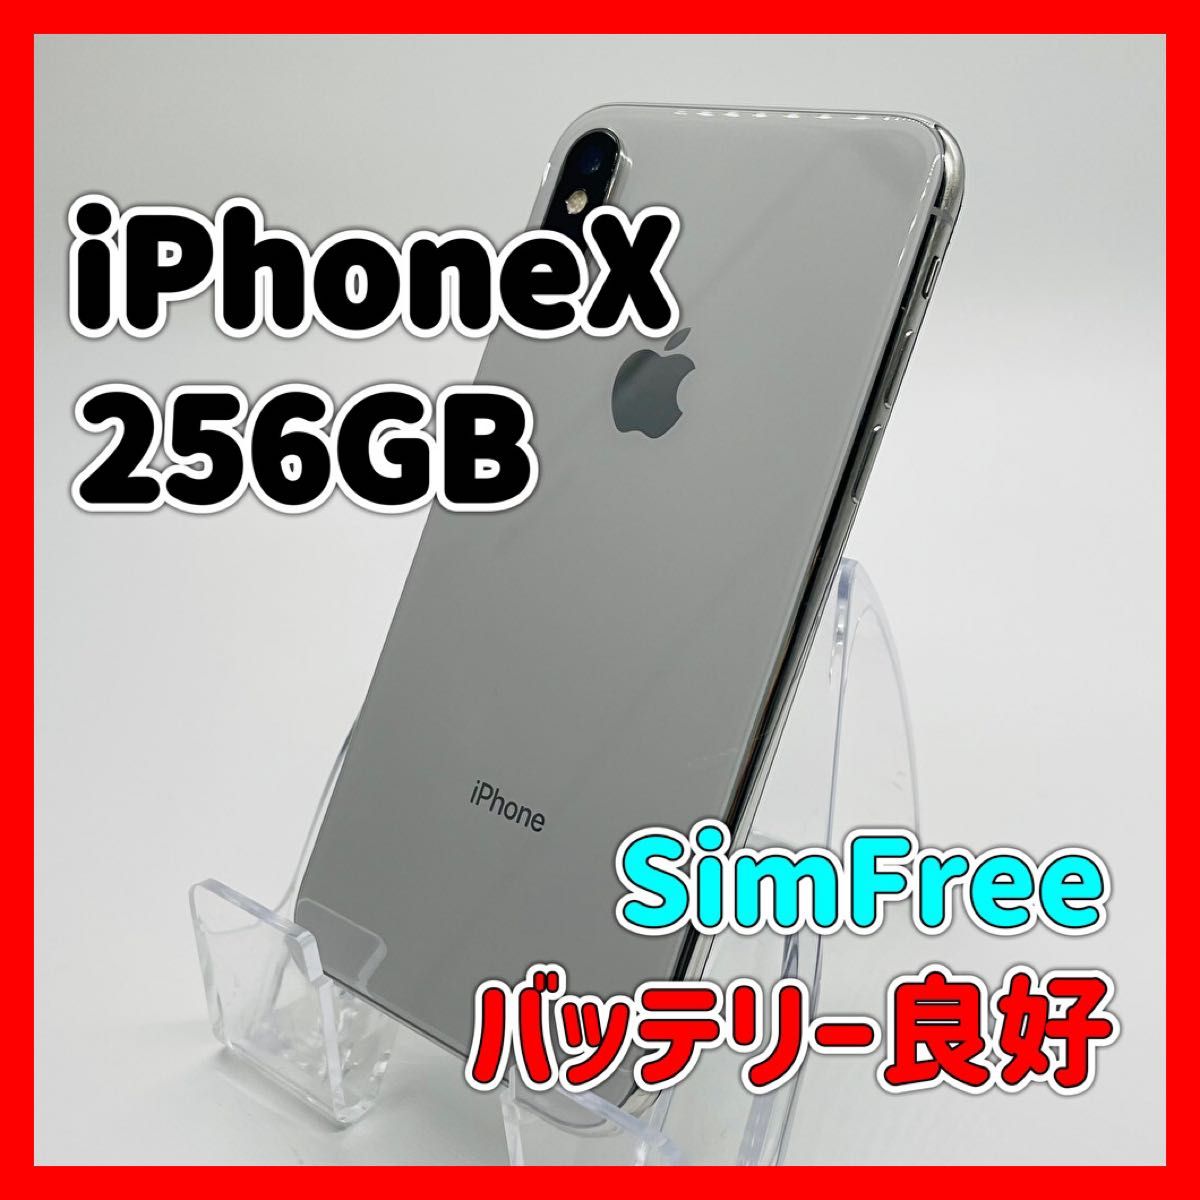 iPhone X Silver 256 GB SIMフリー